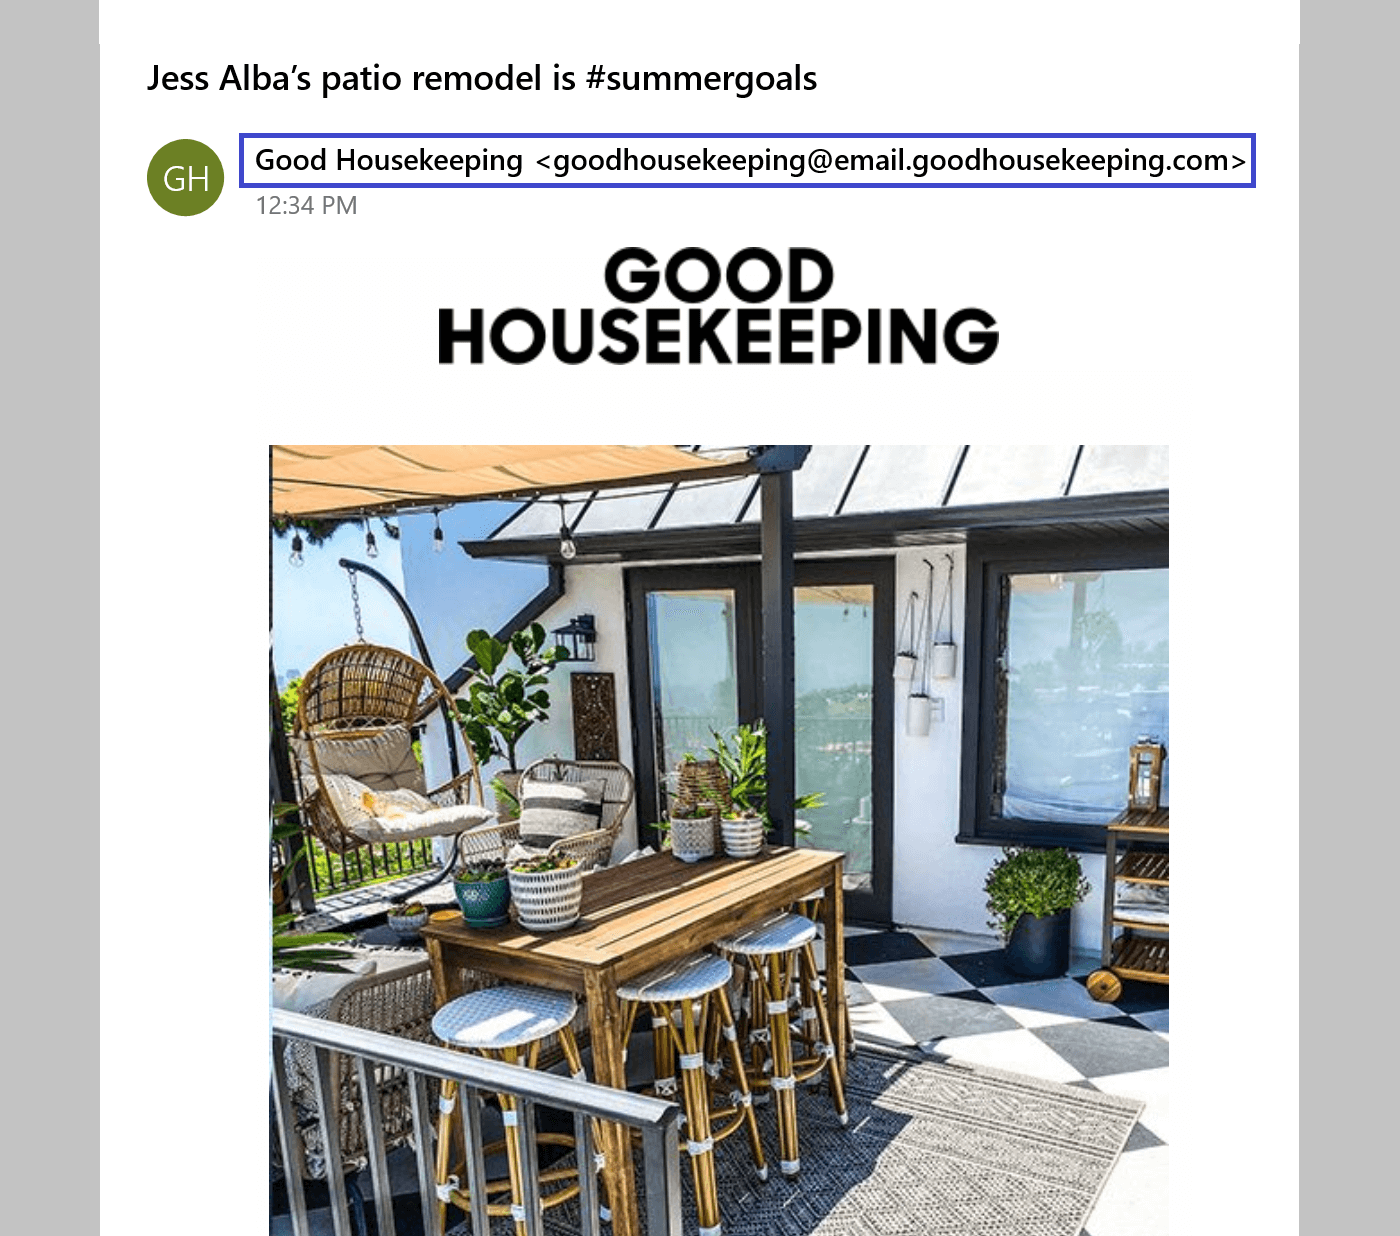 具有频繁品牌推广的 Good Housekeeping 电子邮件滴灌活动的示例。